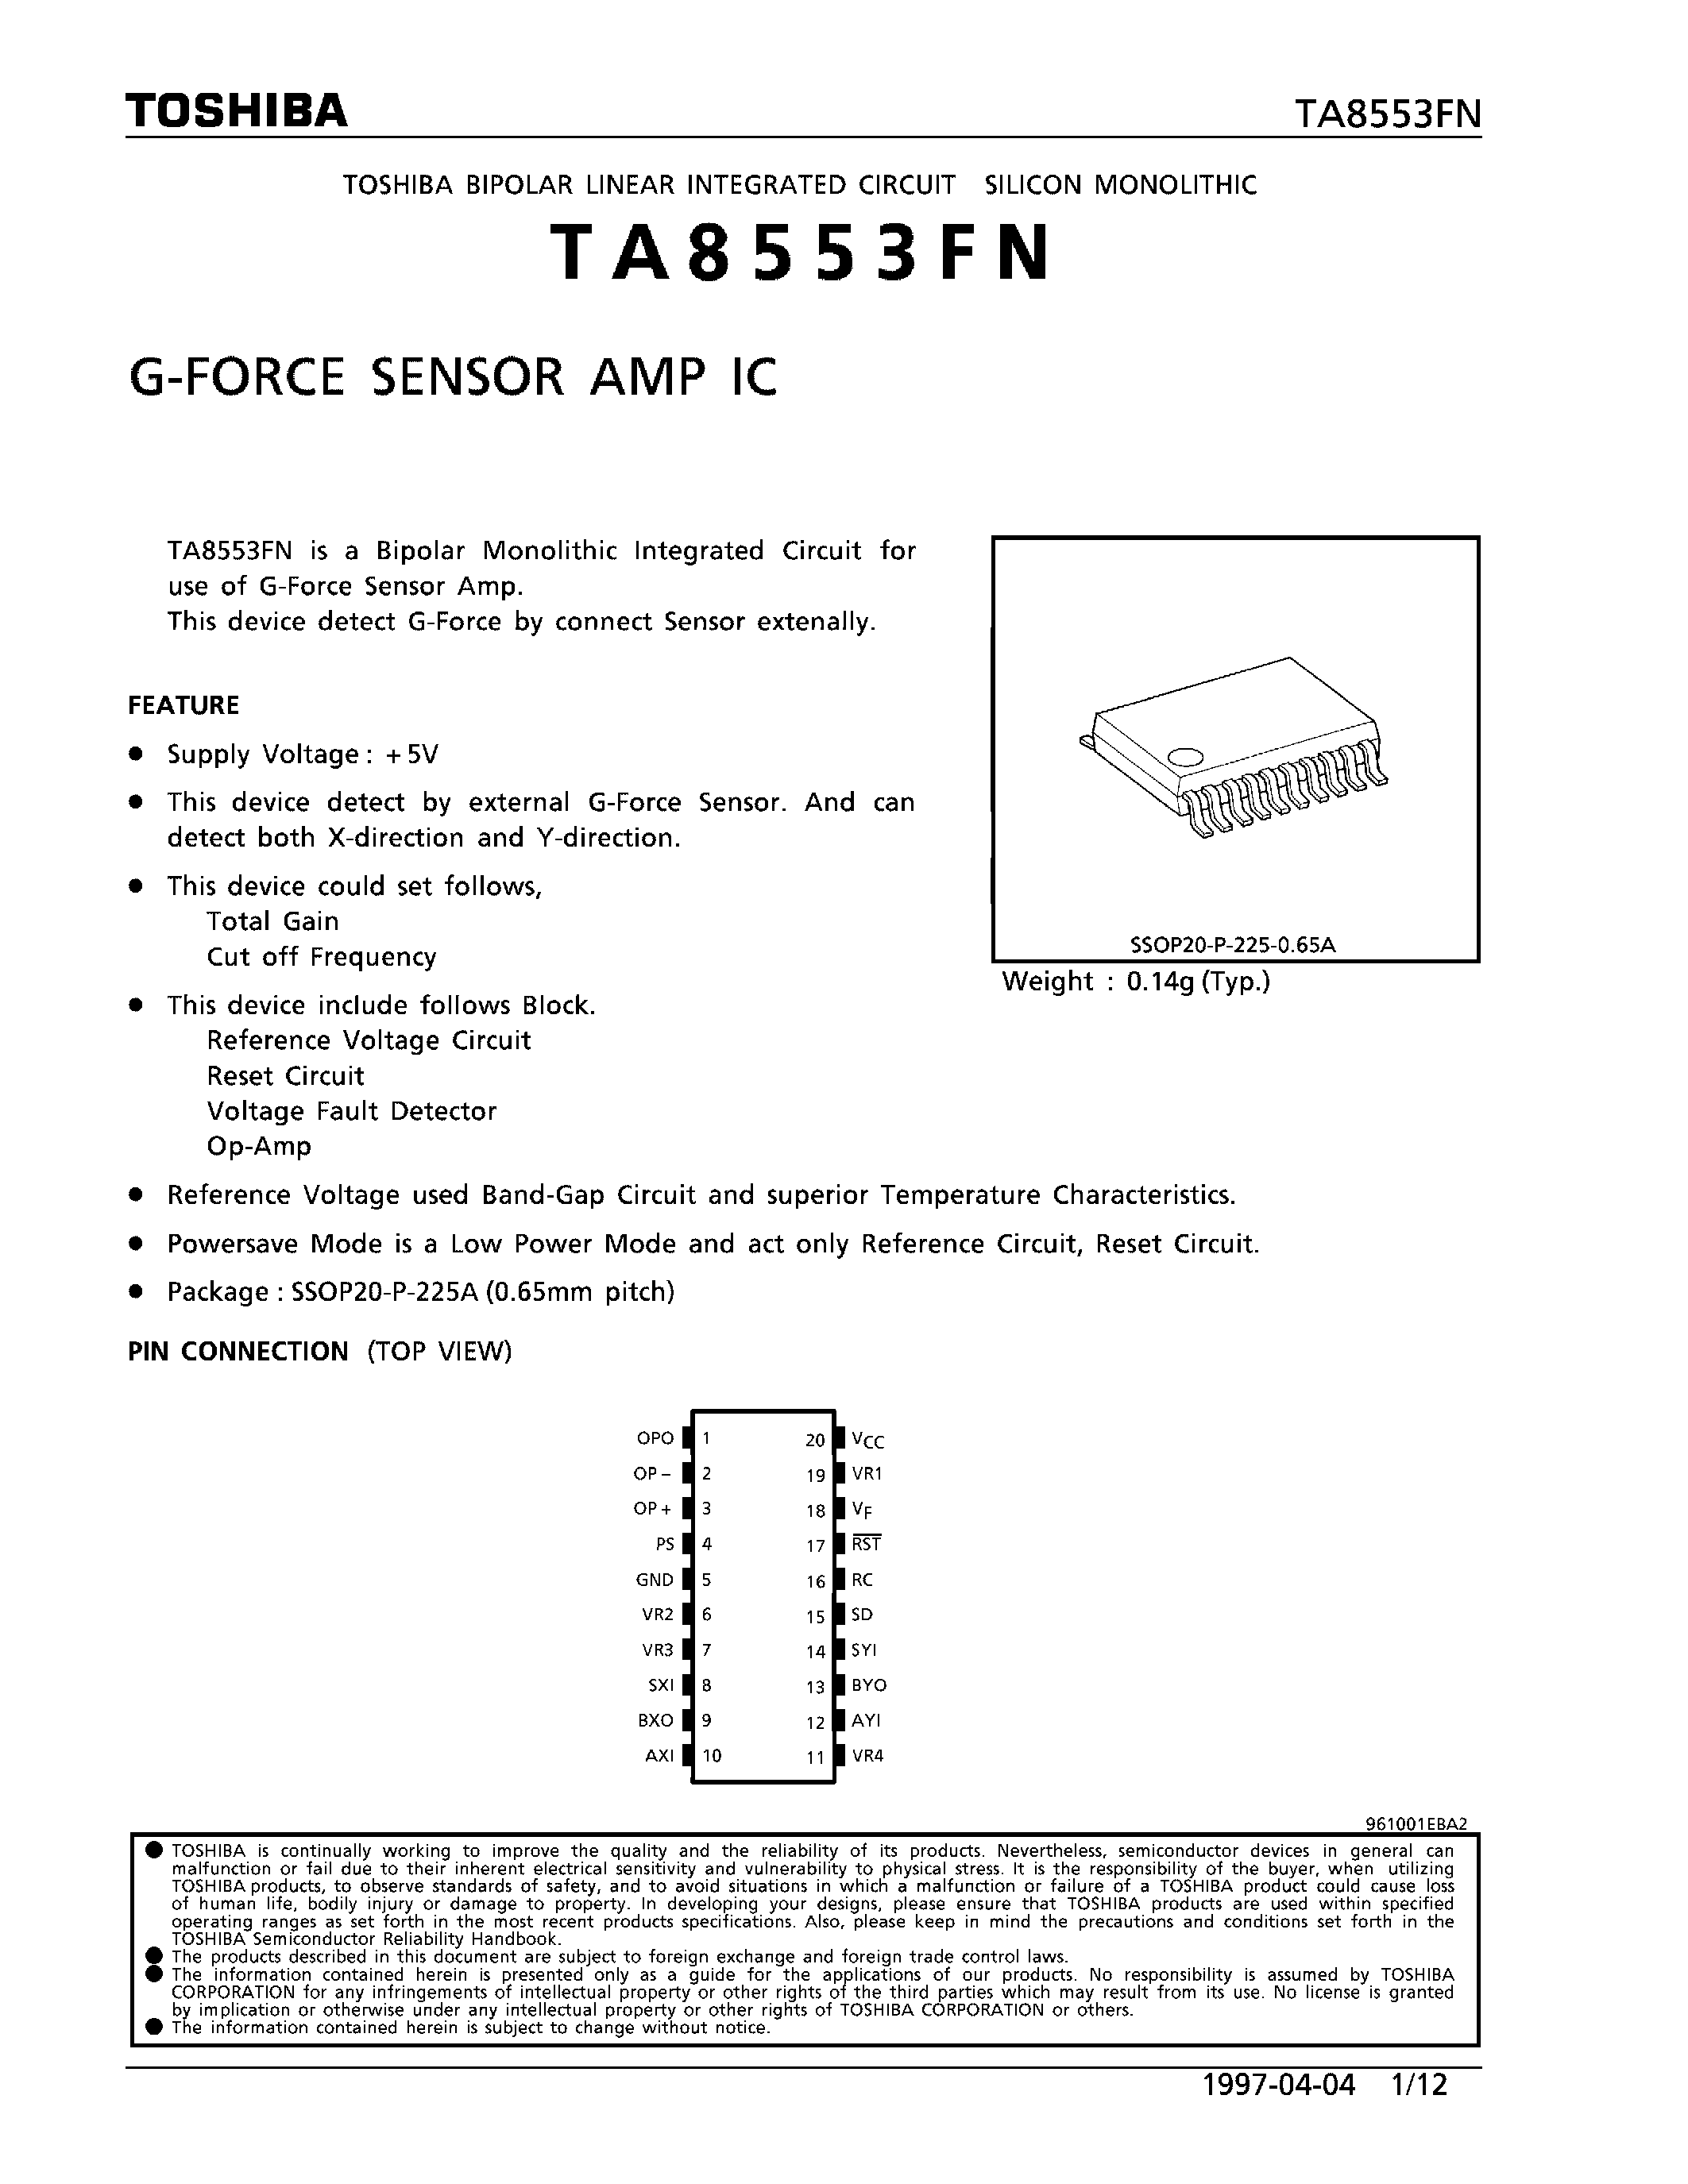 Даташит TA8553FN - G-FORCE SENSOR AMP IC страница 1